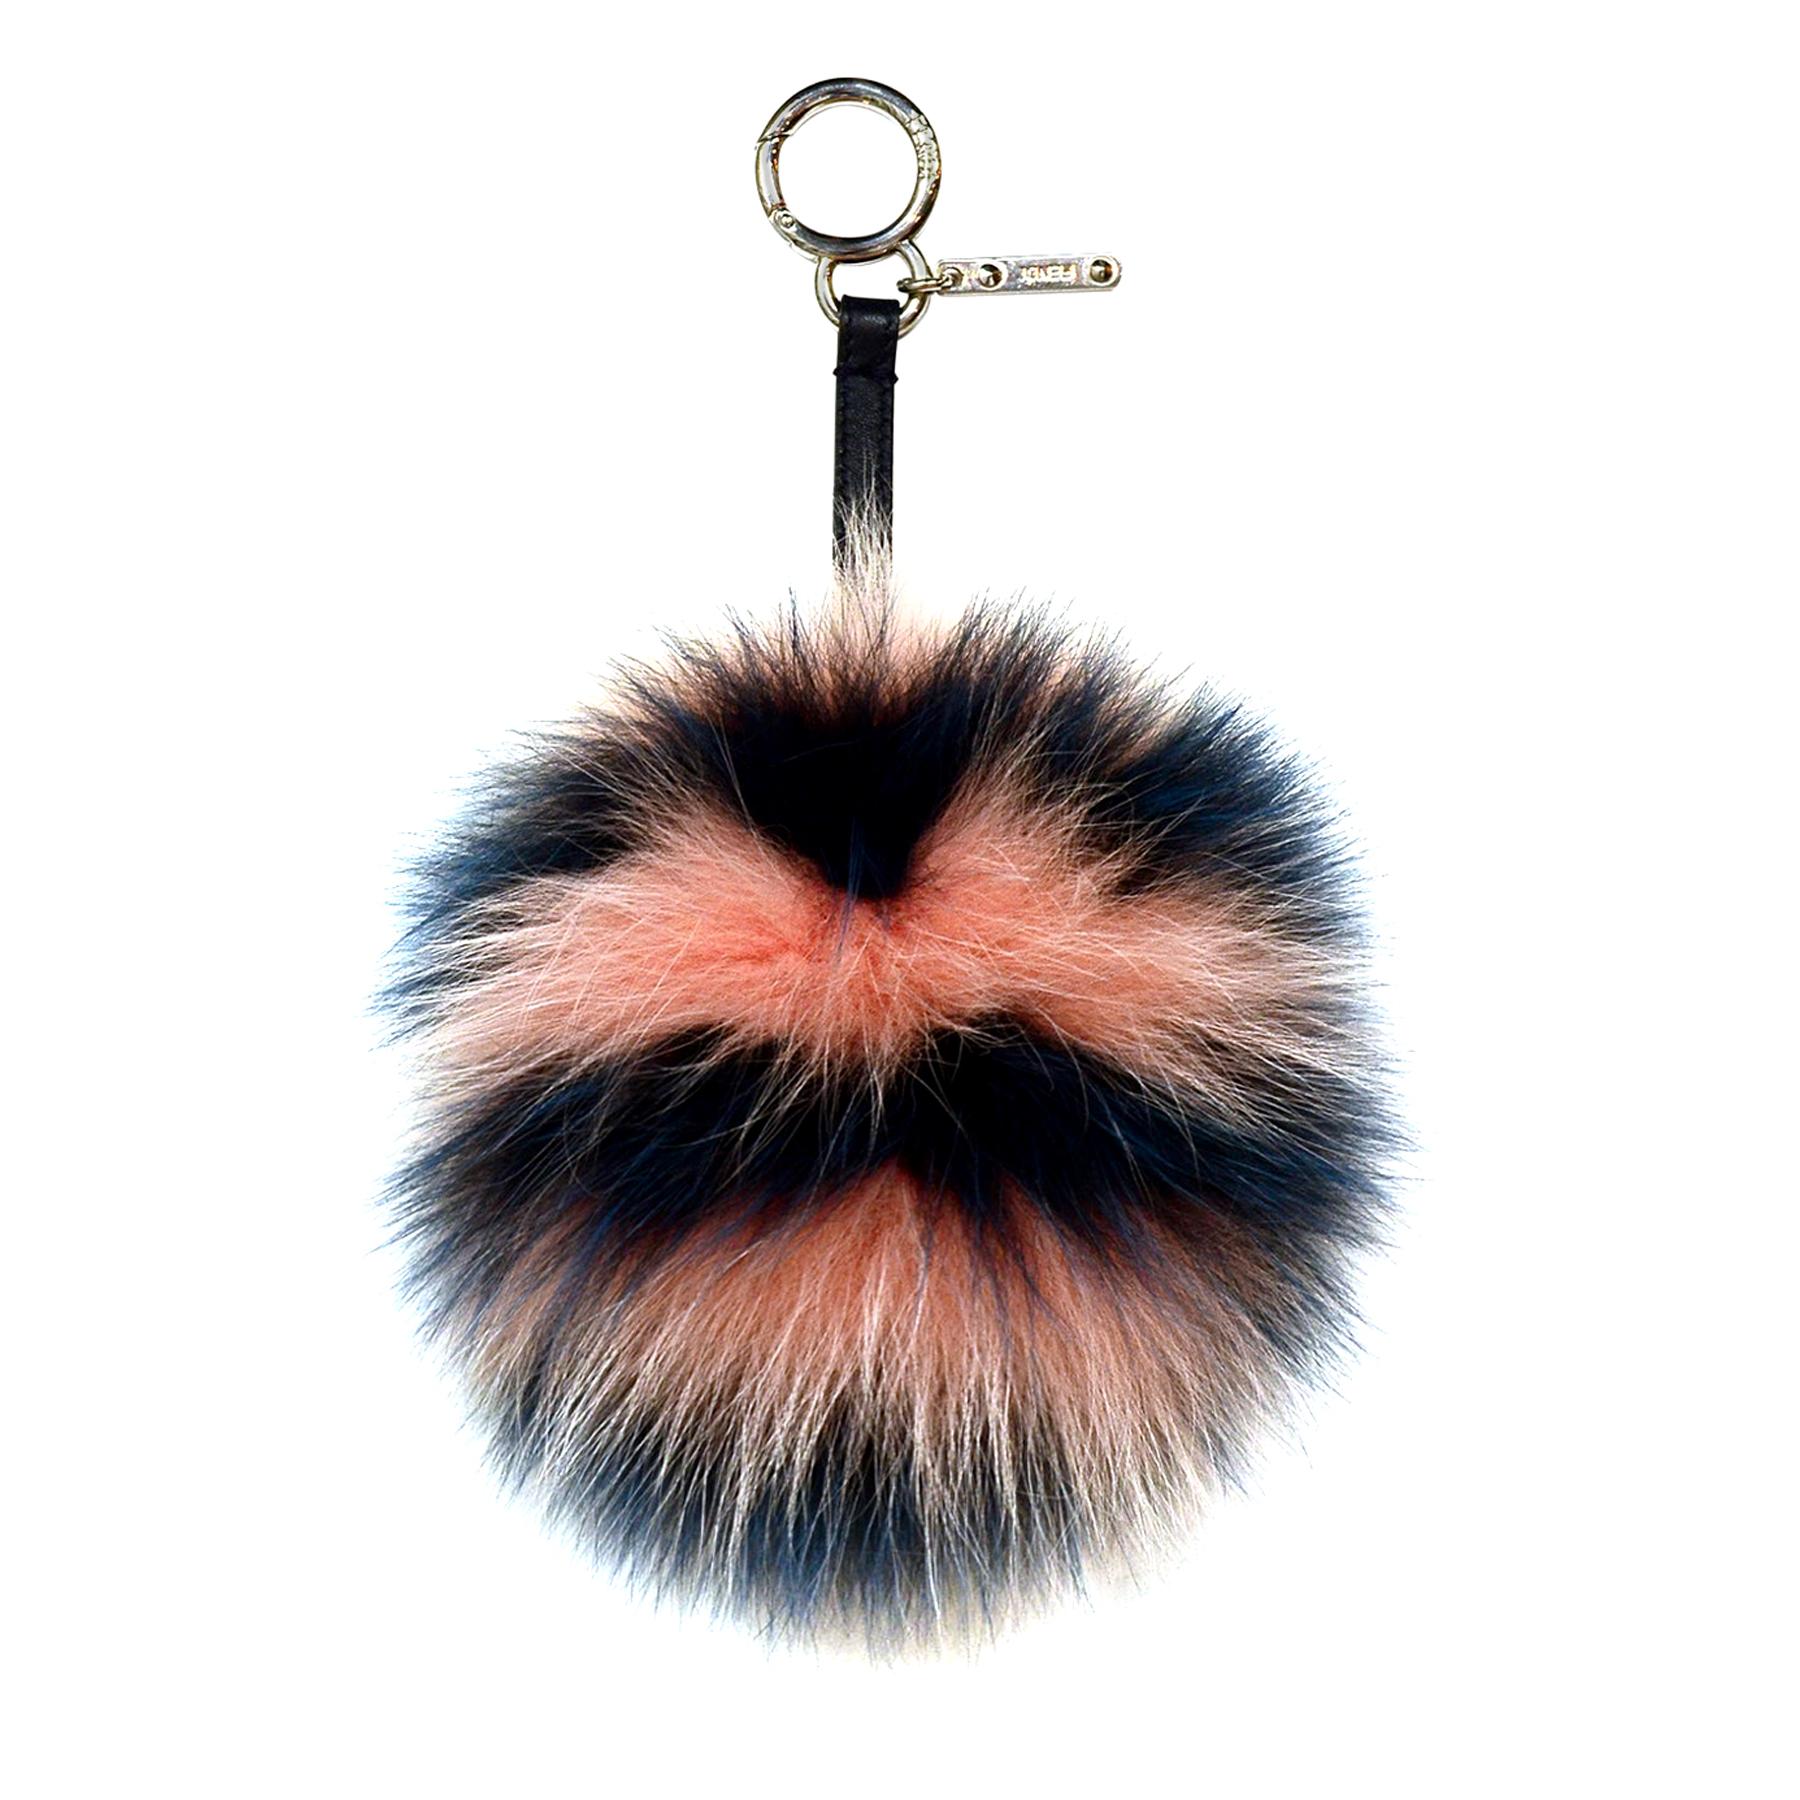 Fendi Peach Blue Stripe Fox Fur Pom Pom Bag Charm rt. $650